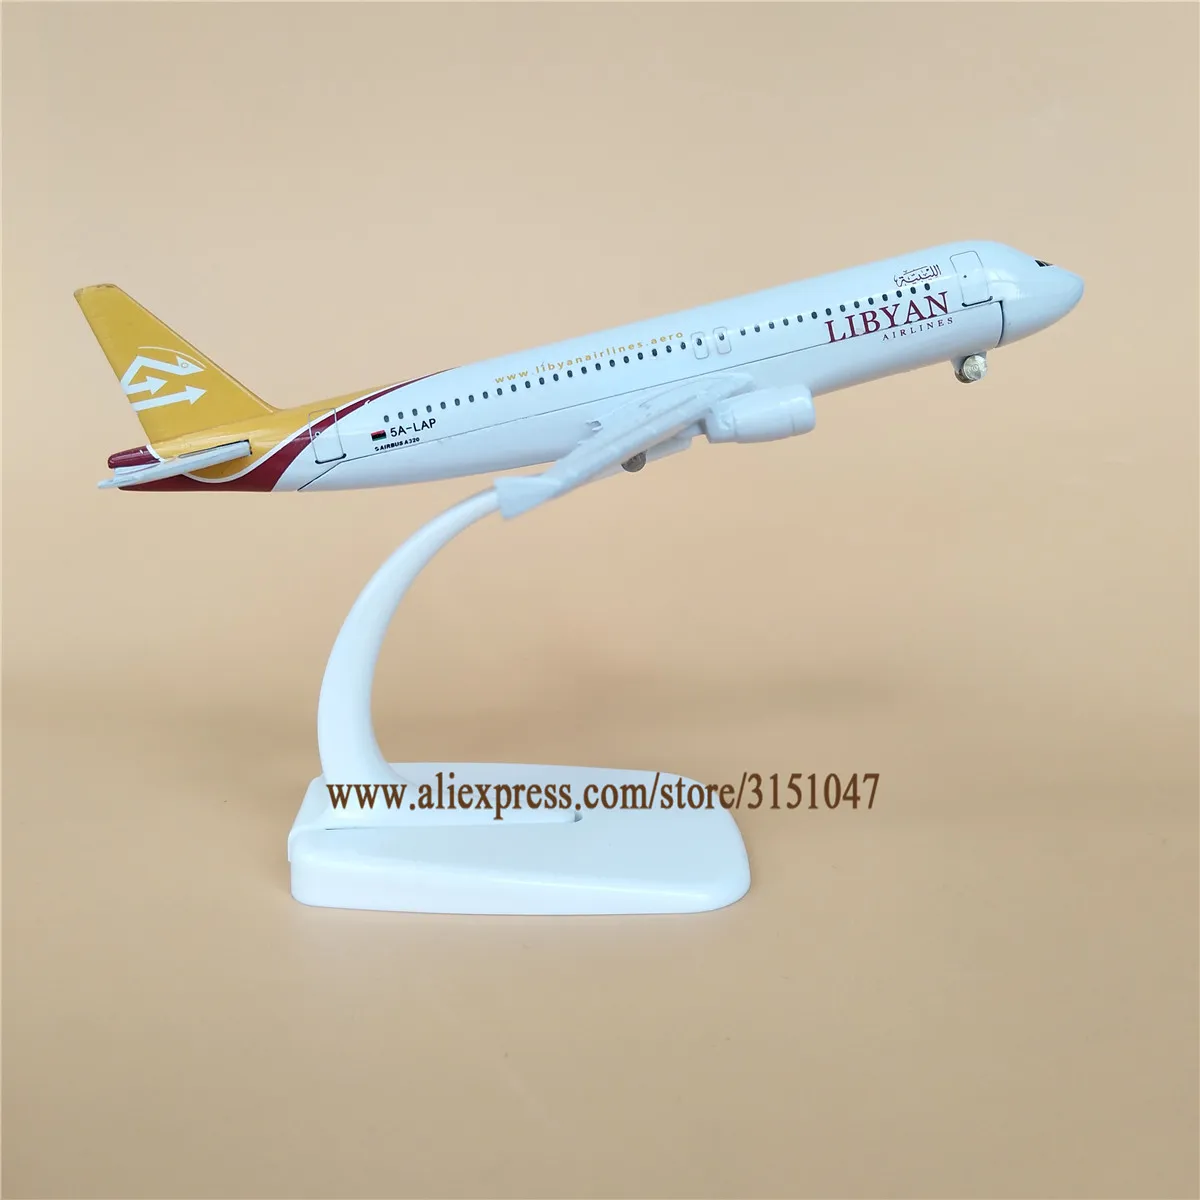 NUEVA Aleación de Metal Aérea de LIBIA Airlines, Avión Modelo Airbus 320 A320 Airways Modelo de Avión Stand de la Aeronave a los Niños los Regalos de 16cm 5